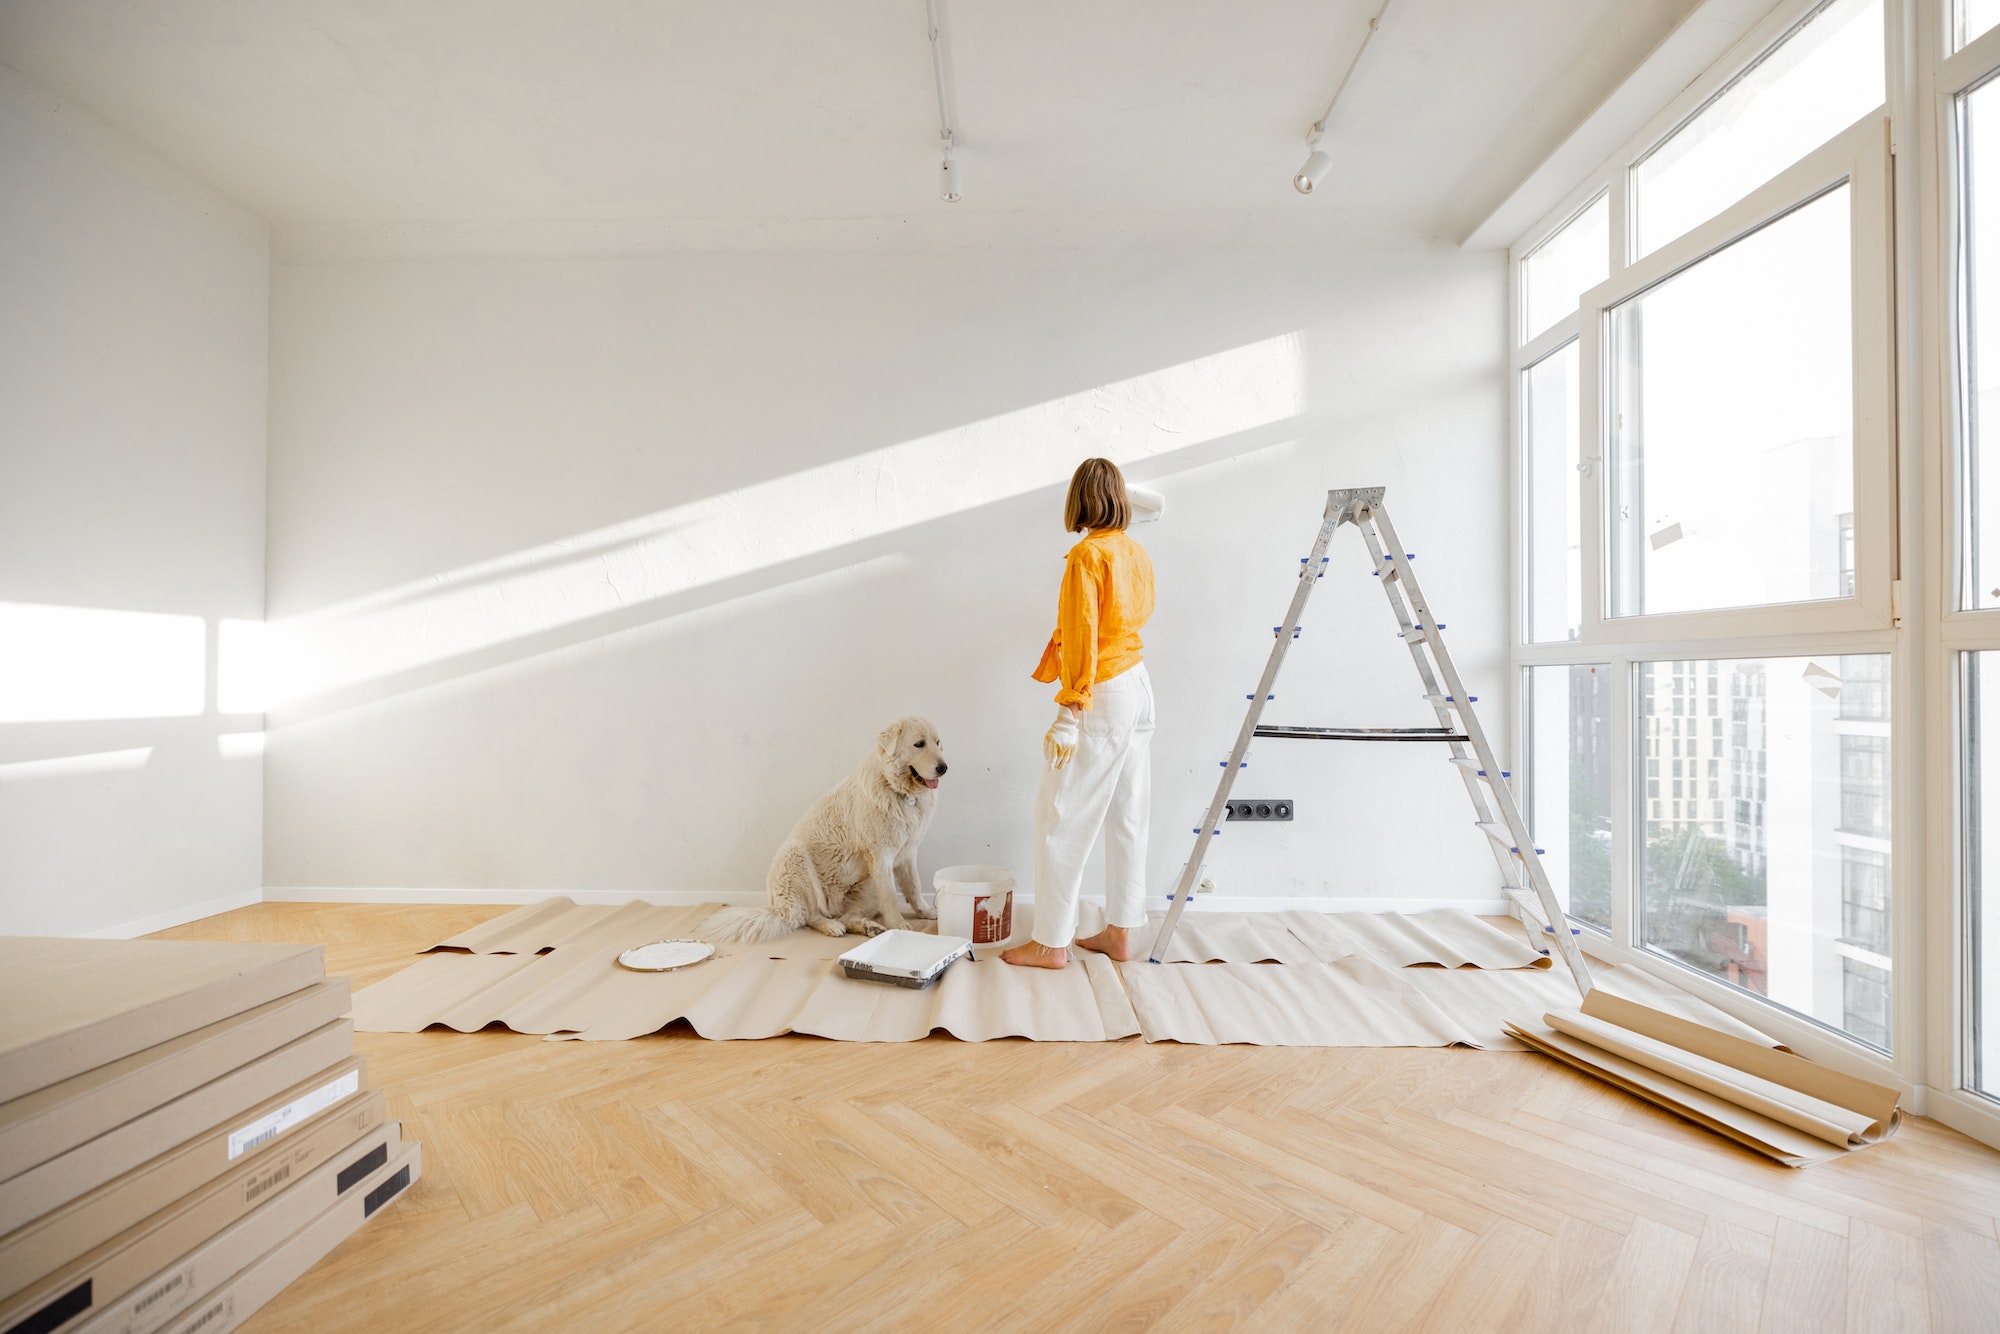 Zamiana pustego mieszkania w ciepły dom – kompleksowe wykończenie wnętrz w 15 krokach